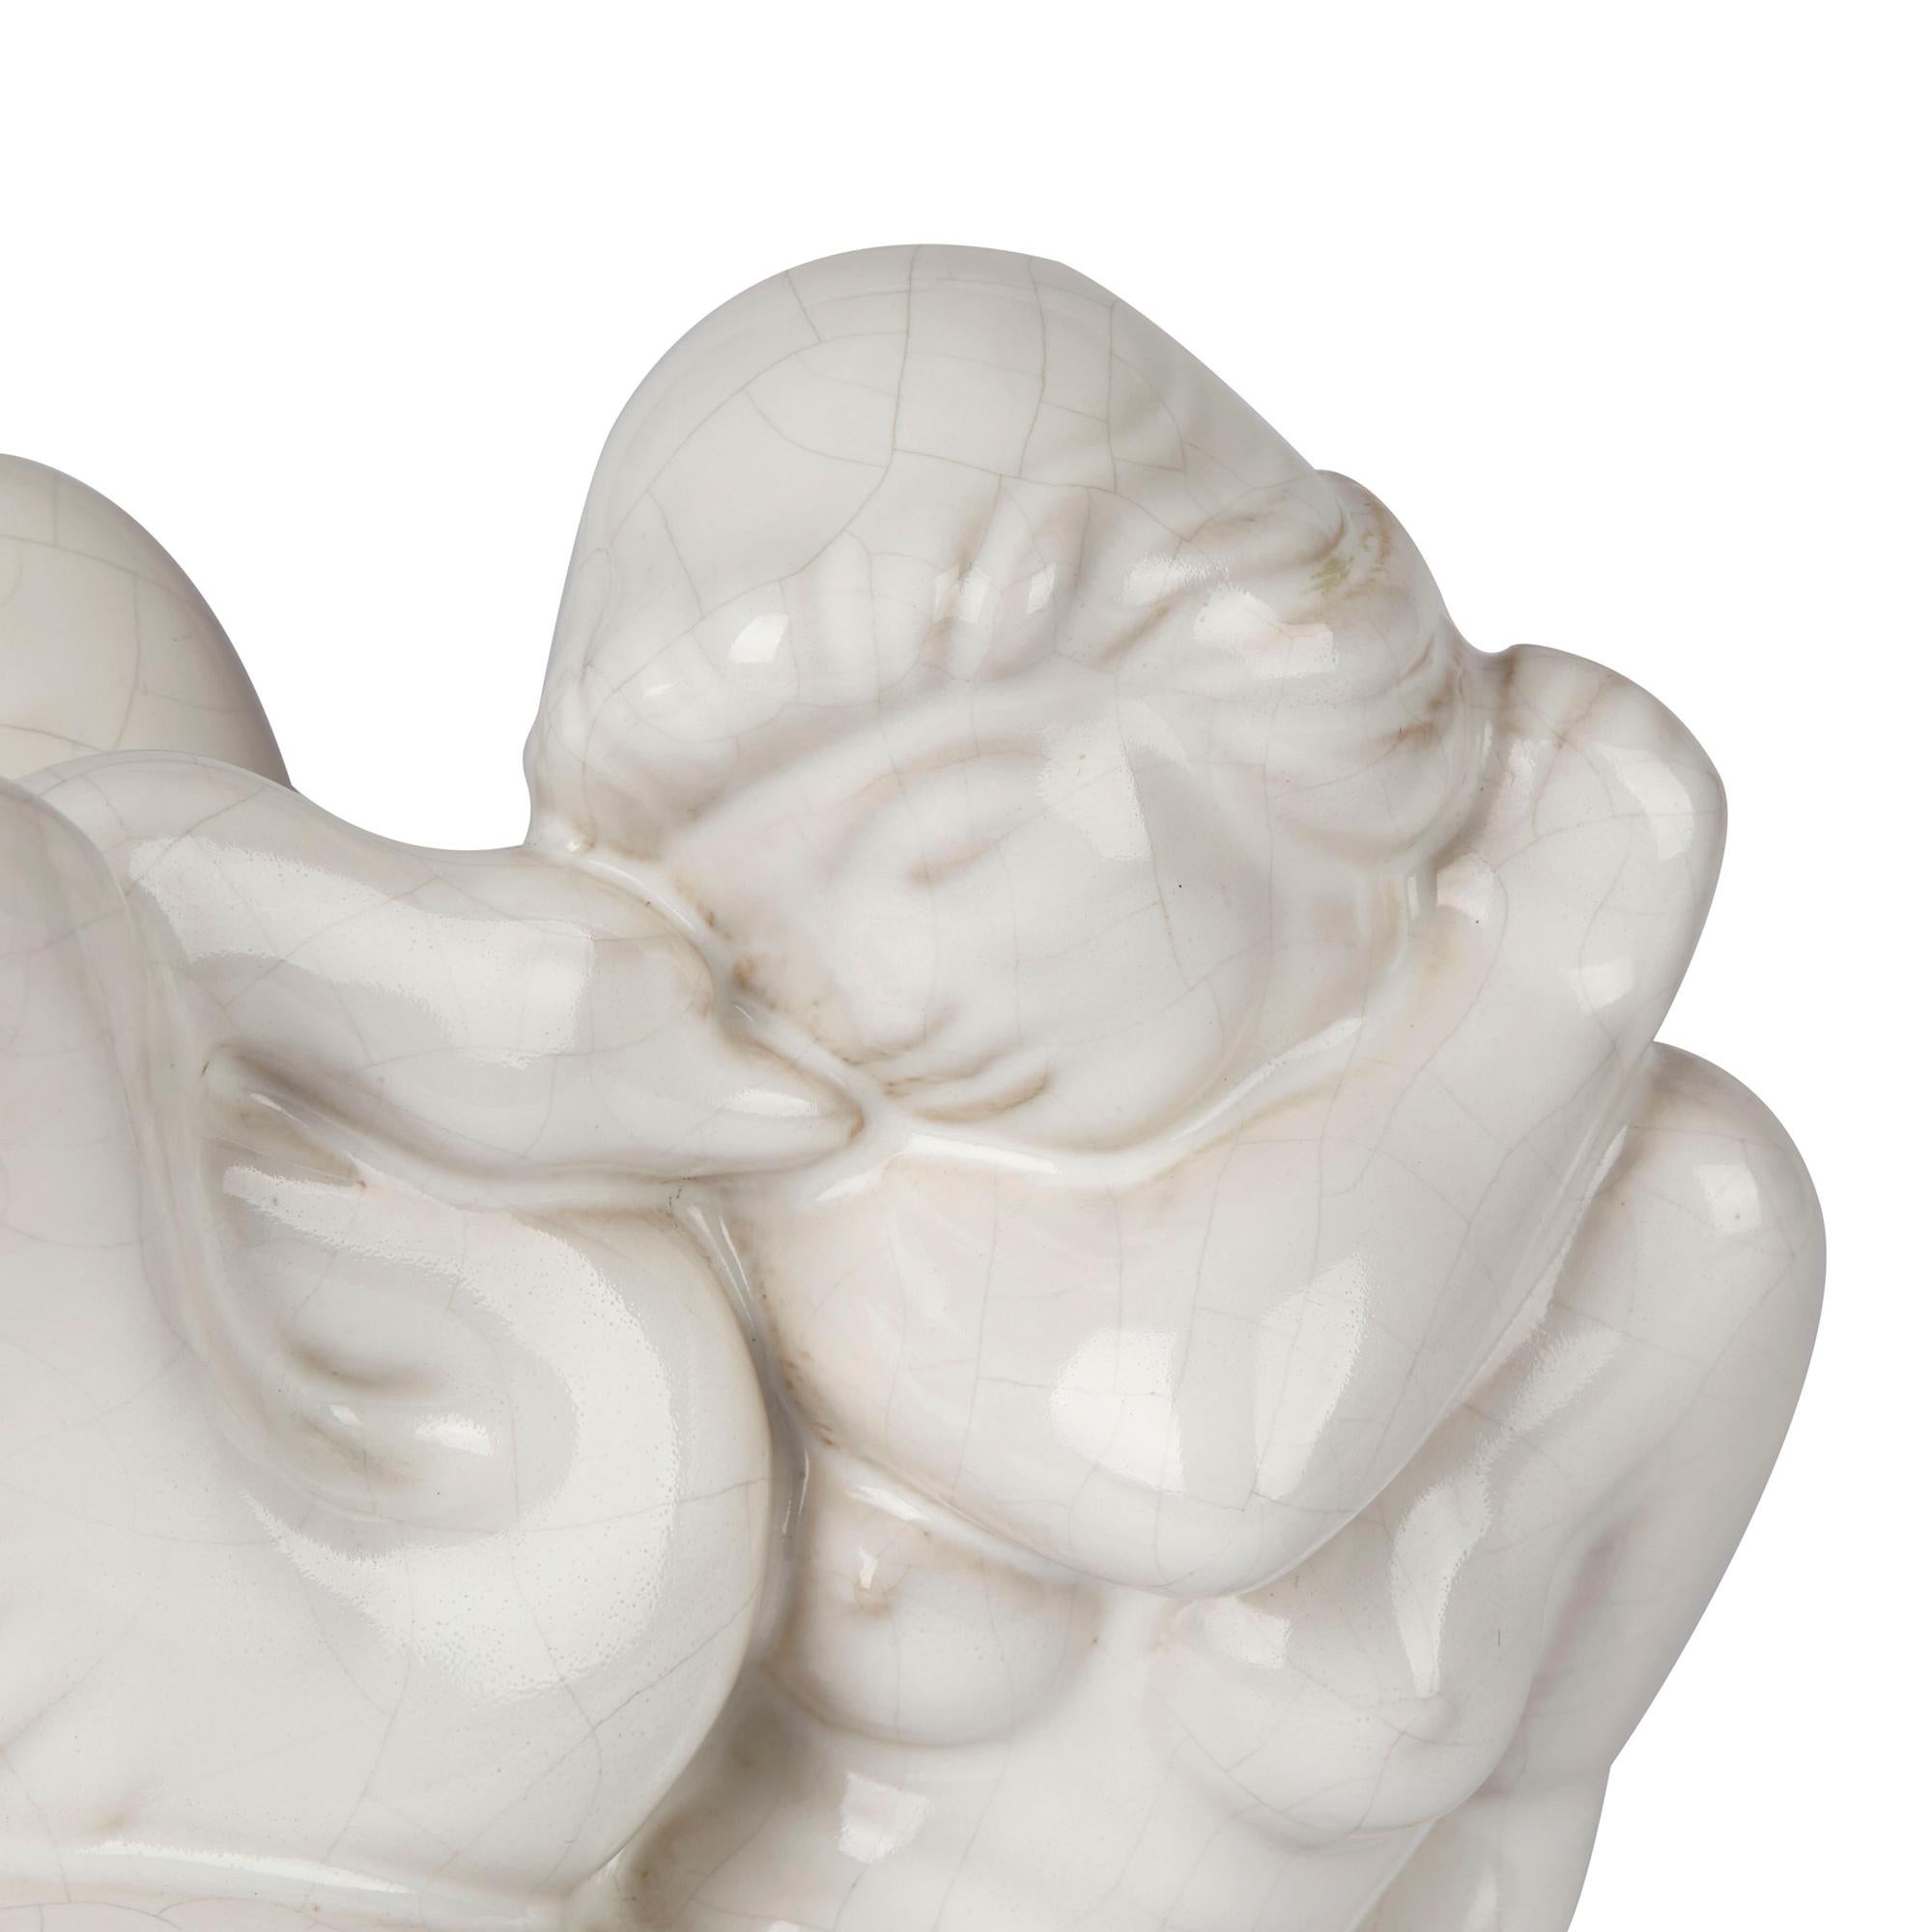 Une élégante sculpture vintage en poterie danoise Knabstrup Keramiek représentant une jeune fille nue avec un cygne, assise sur un socle ovale et décorée de glaçures blanches avec une fine finition craquelée appliquée. Attribuée à Johannes Hansen